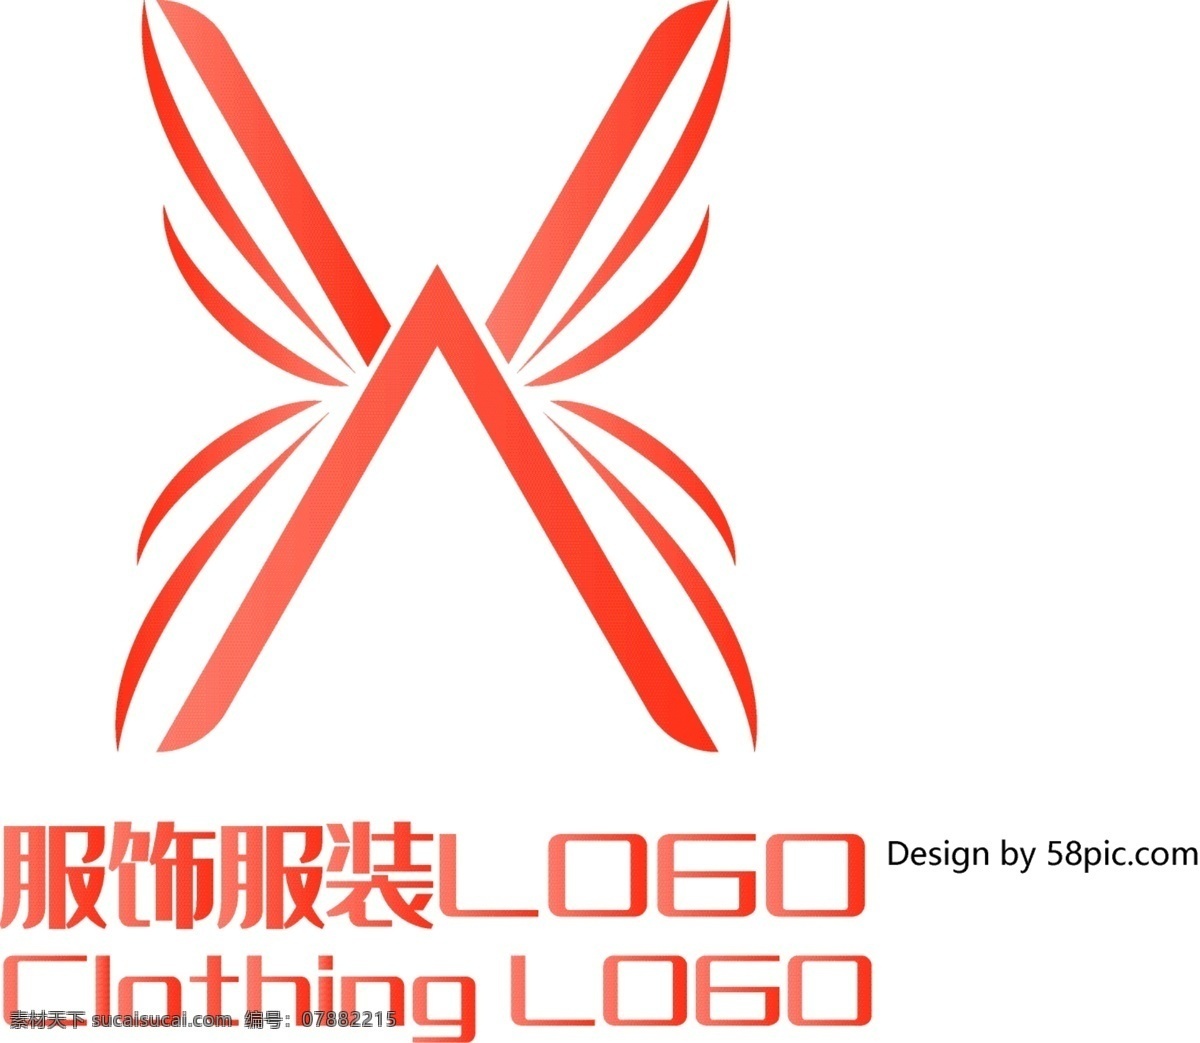 原创 创意 简约 x 字 蝴蝶 服装服饰 logo 标志 可商用 字体设计 服饰 服装